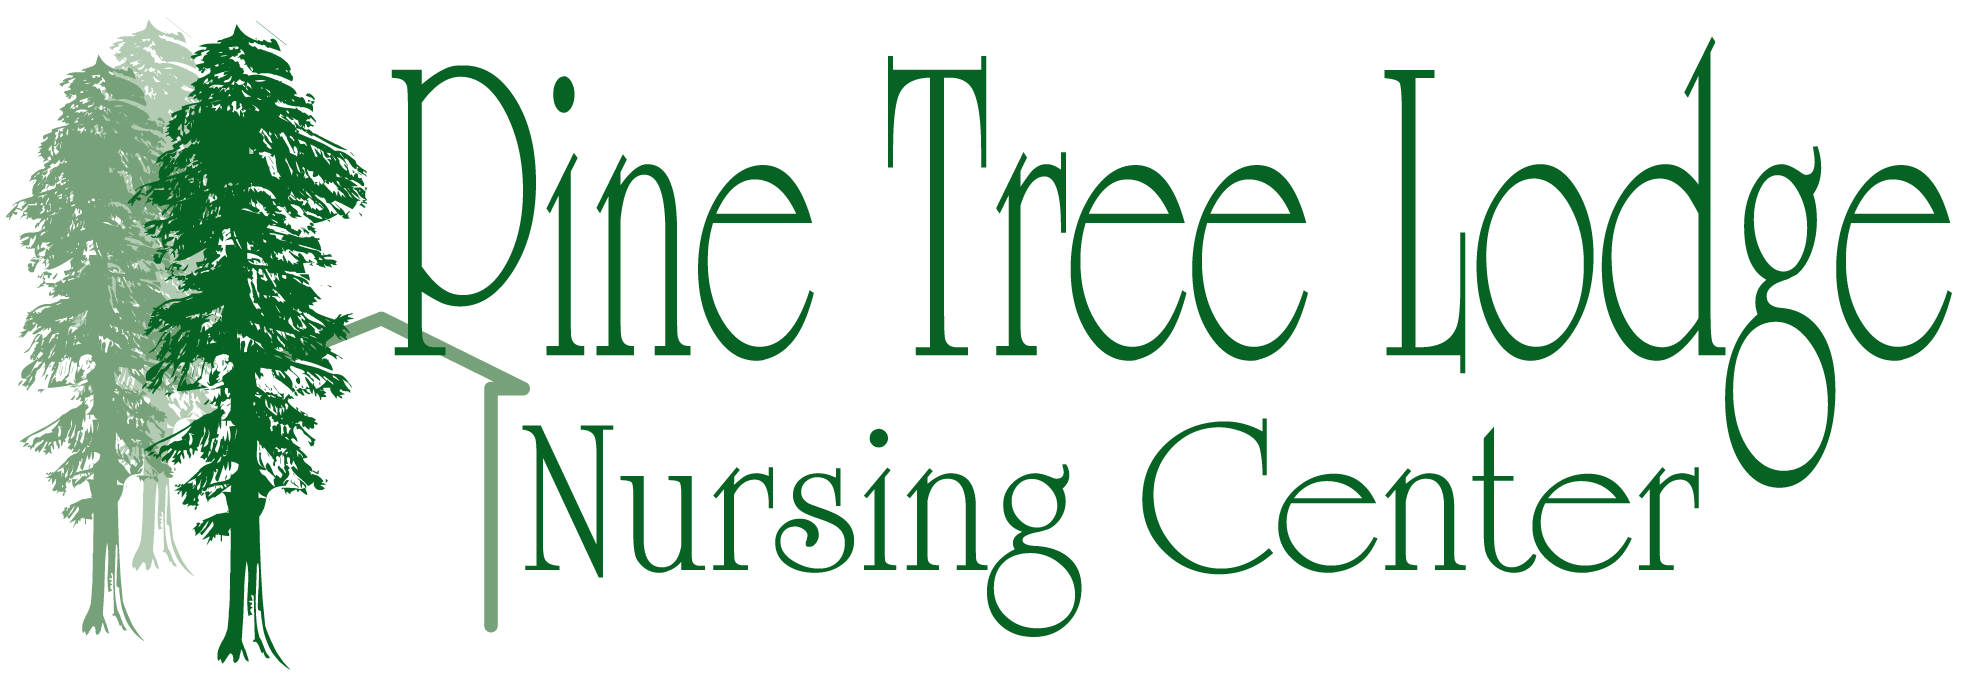 Pine Tree Nursing Center